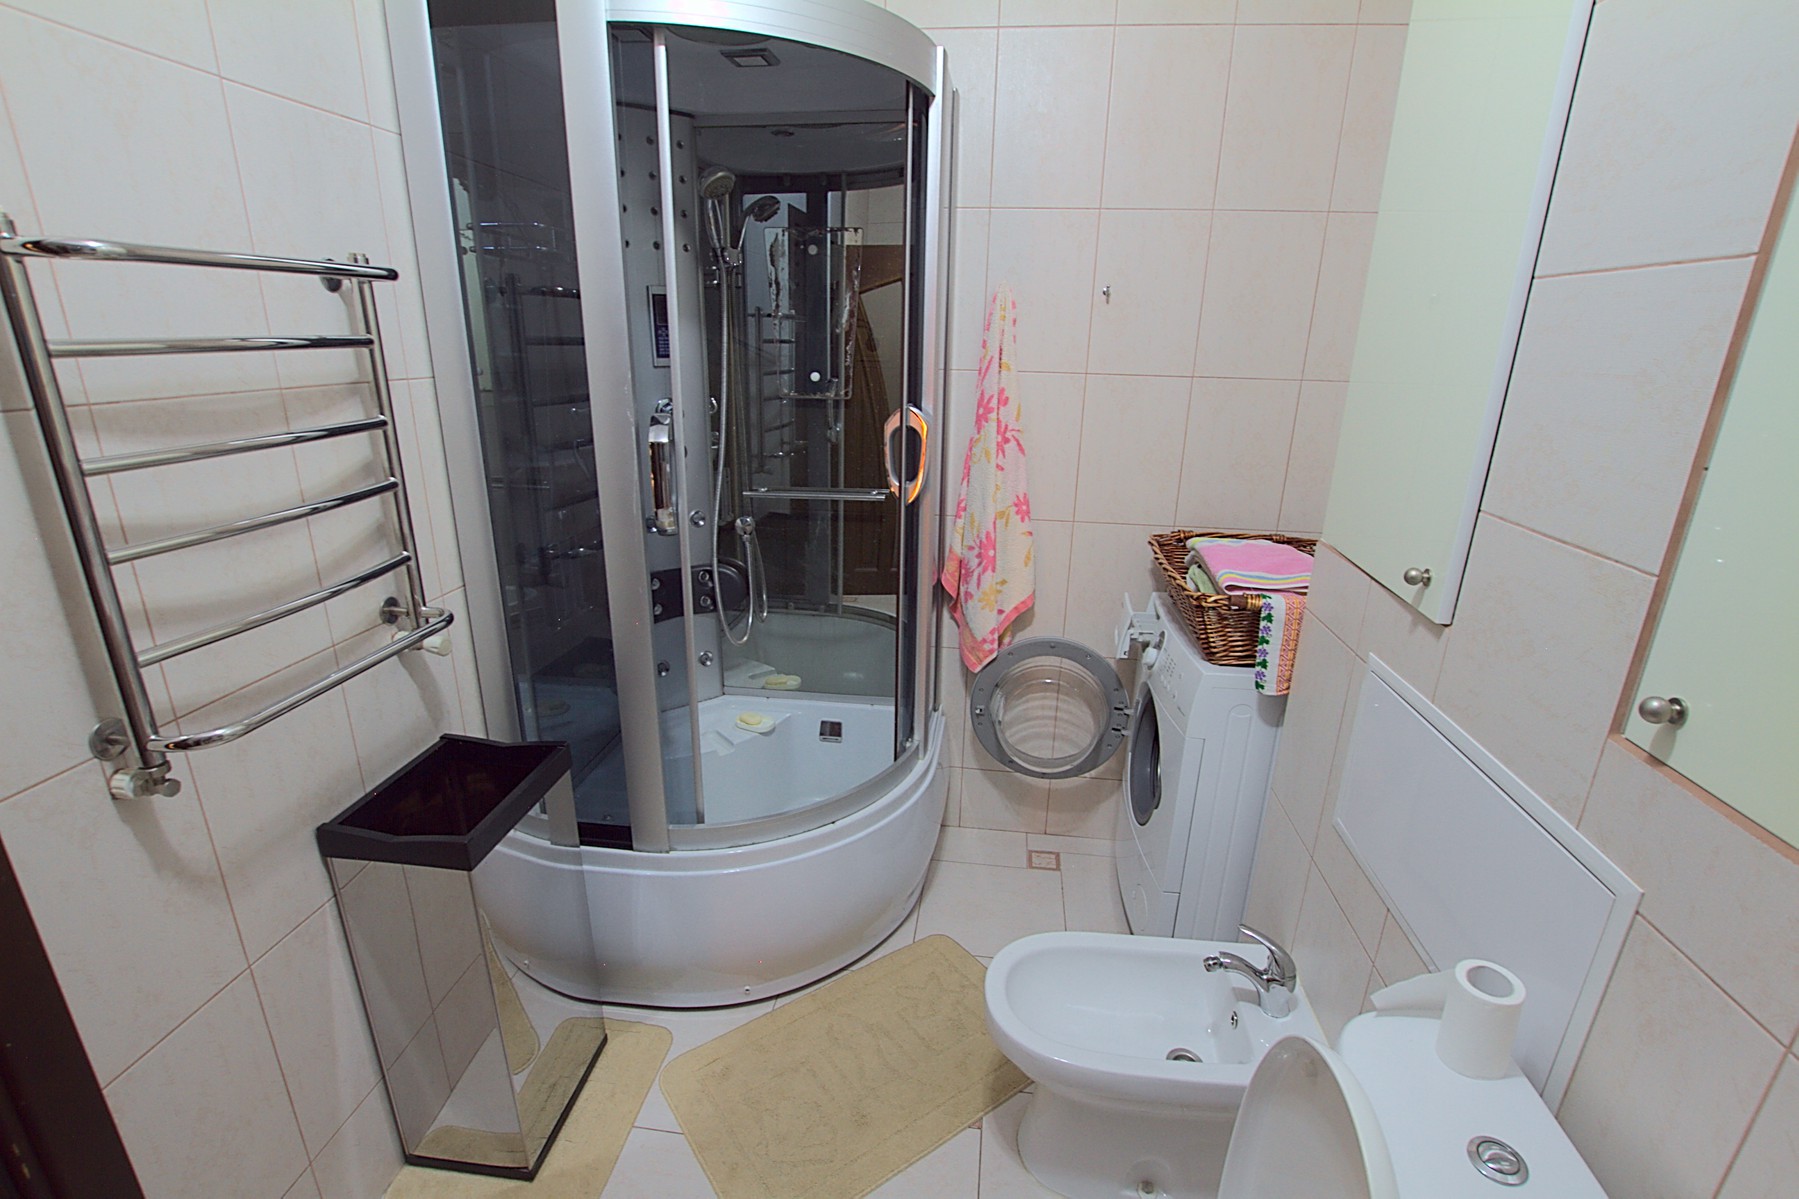 Deluxe Center Apartment es un apartamento de 3 habitaciones en alquiler en Chisinau, Moldova